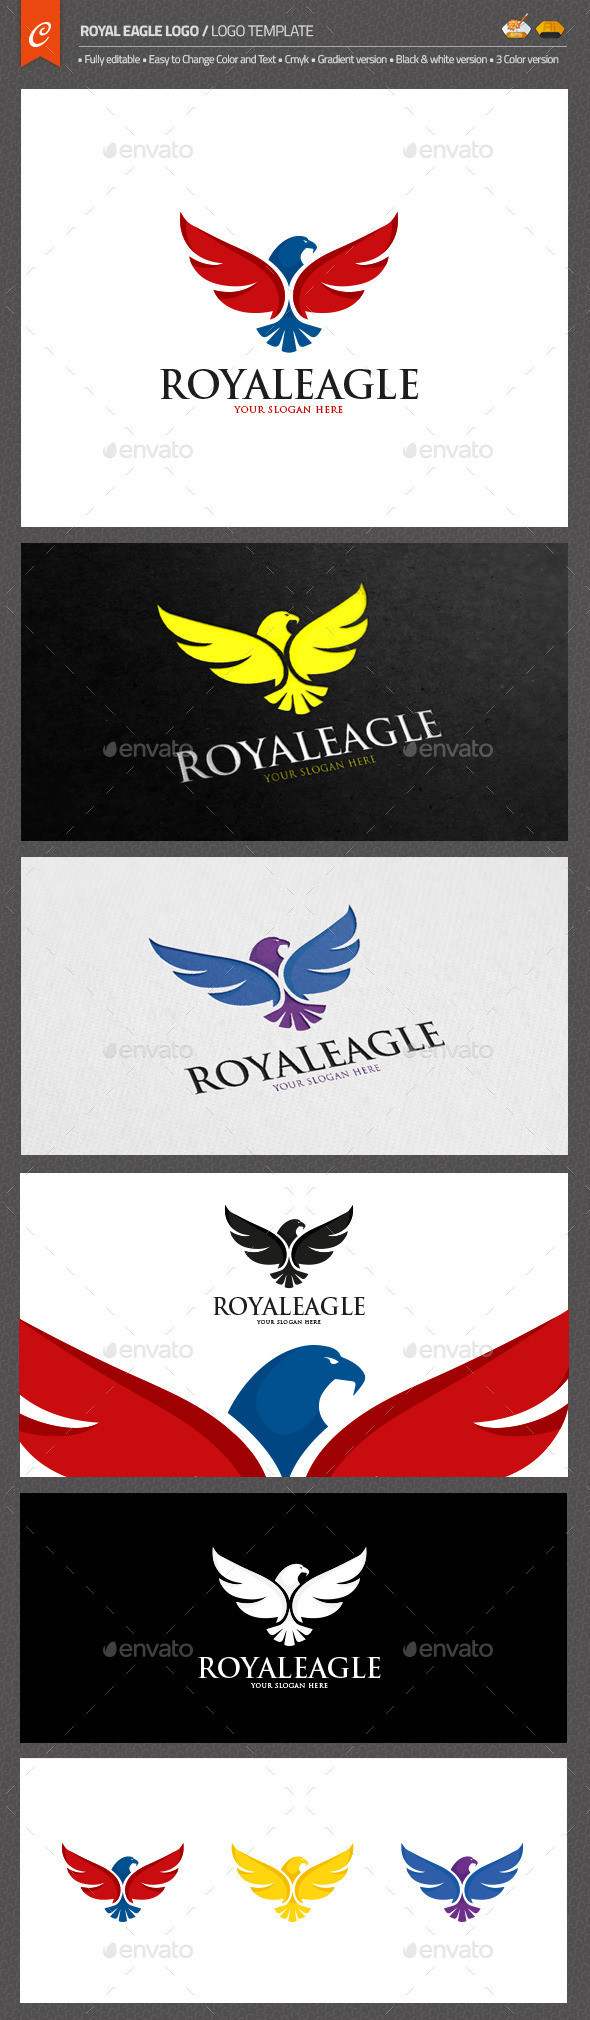 Royal eagle logo